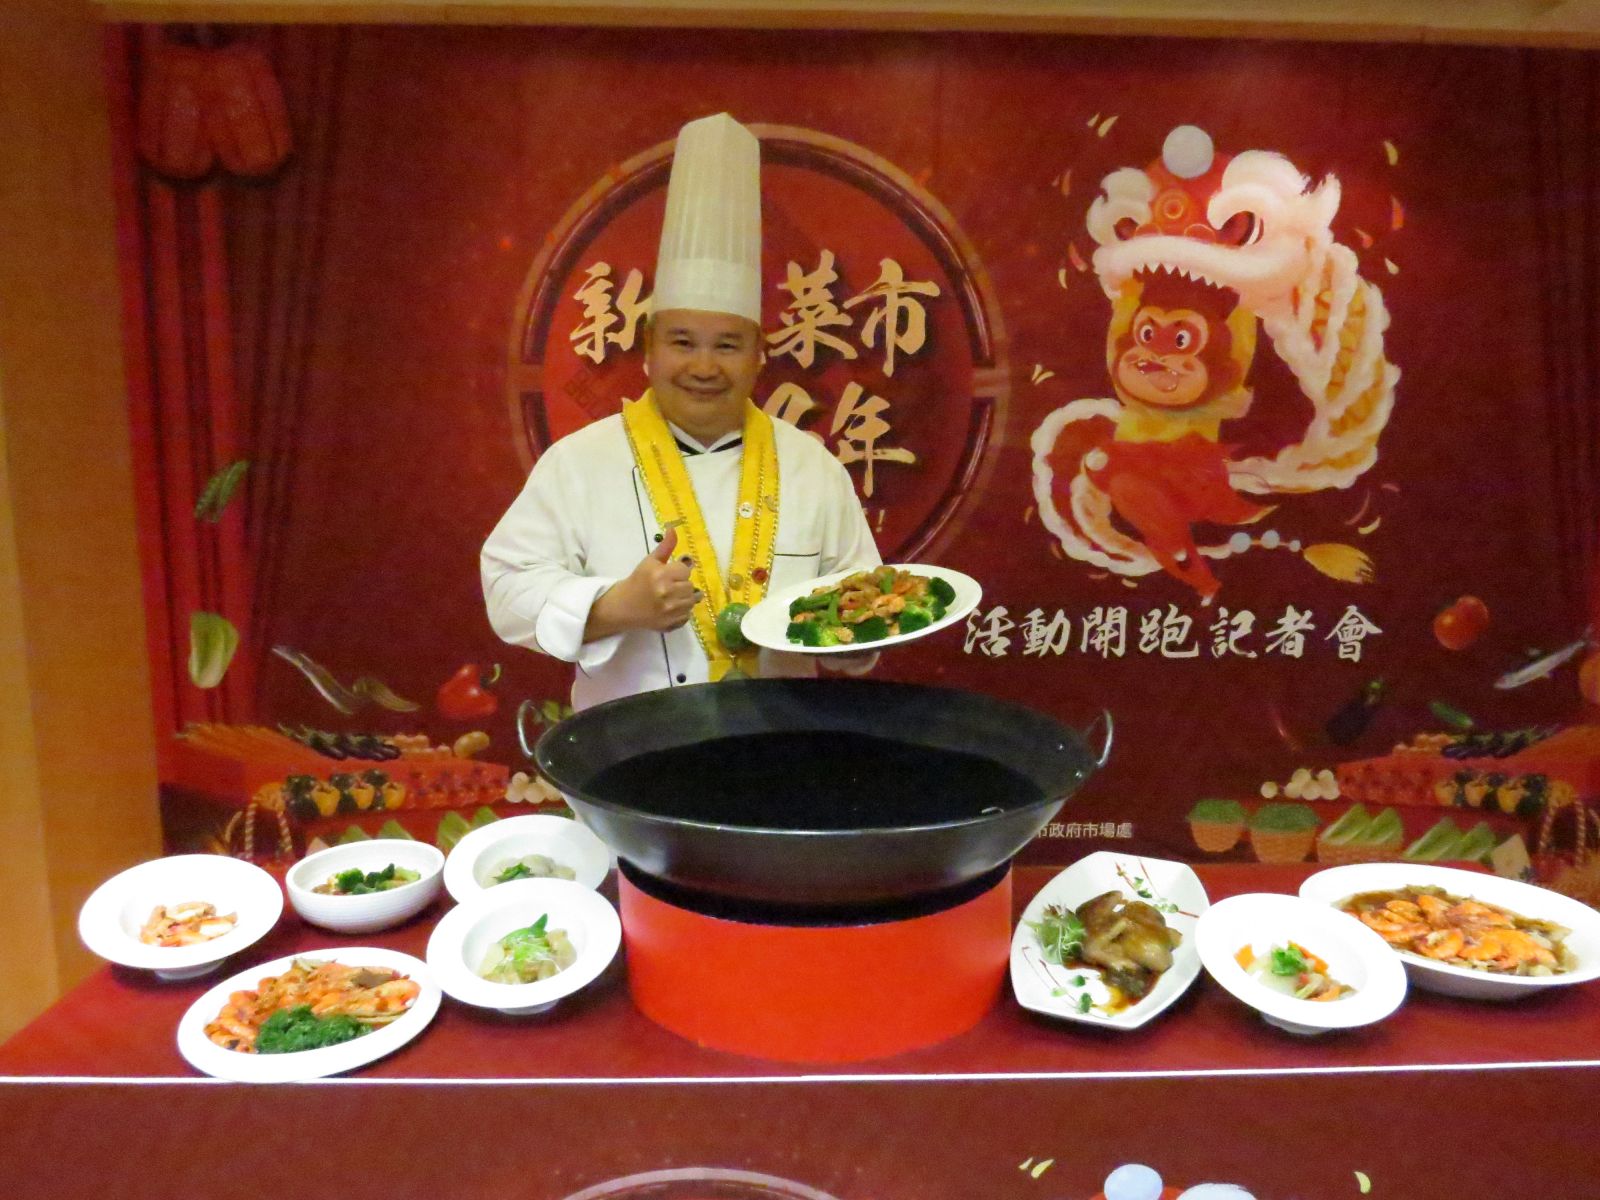 金牌主廚駱進漢利用市場在地食材設計10道創意料理食譜。